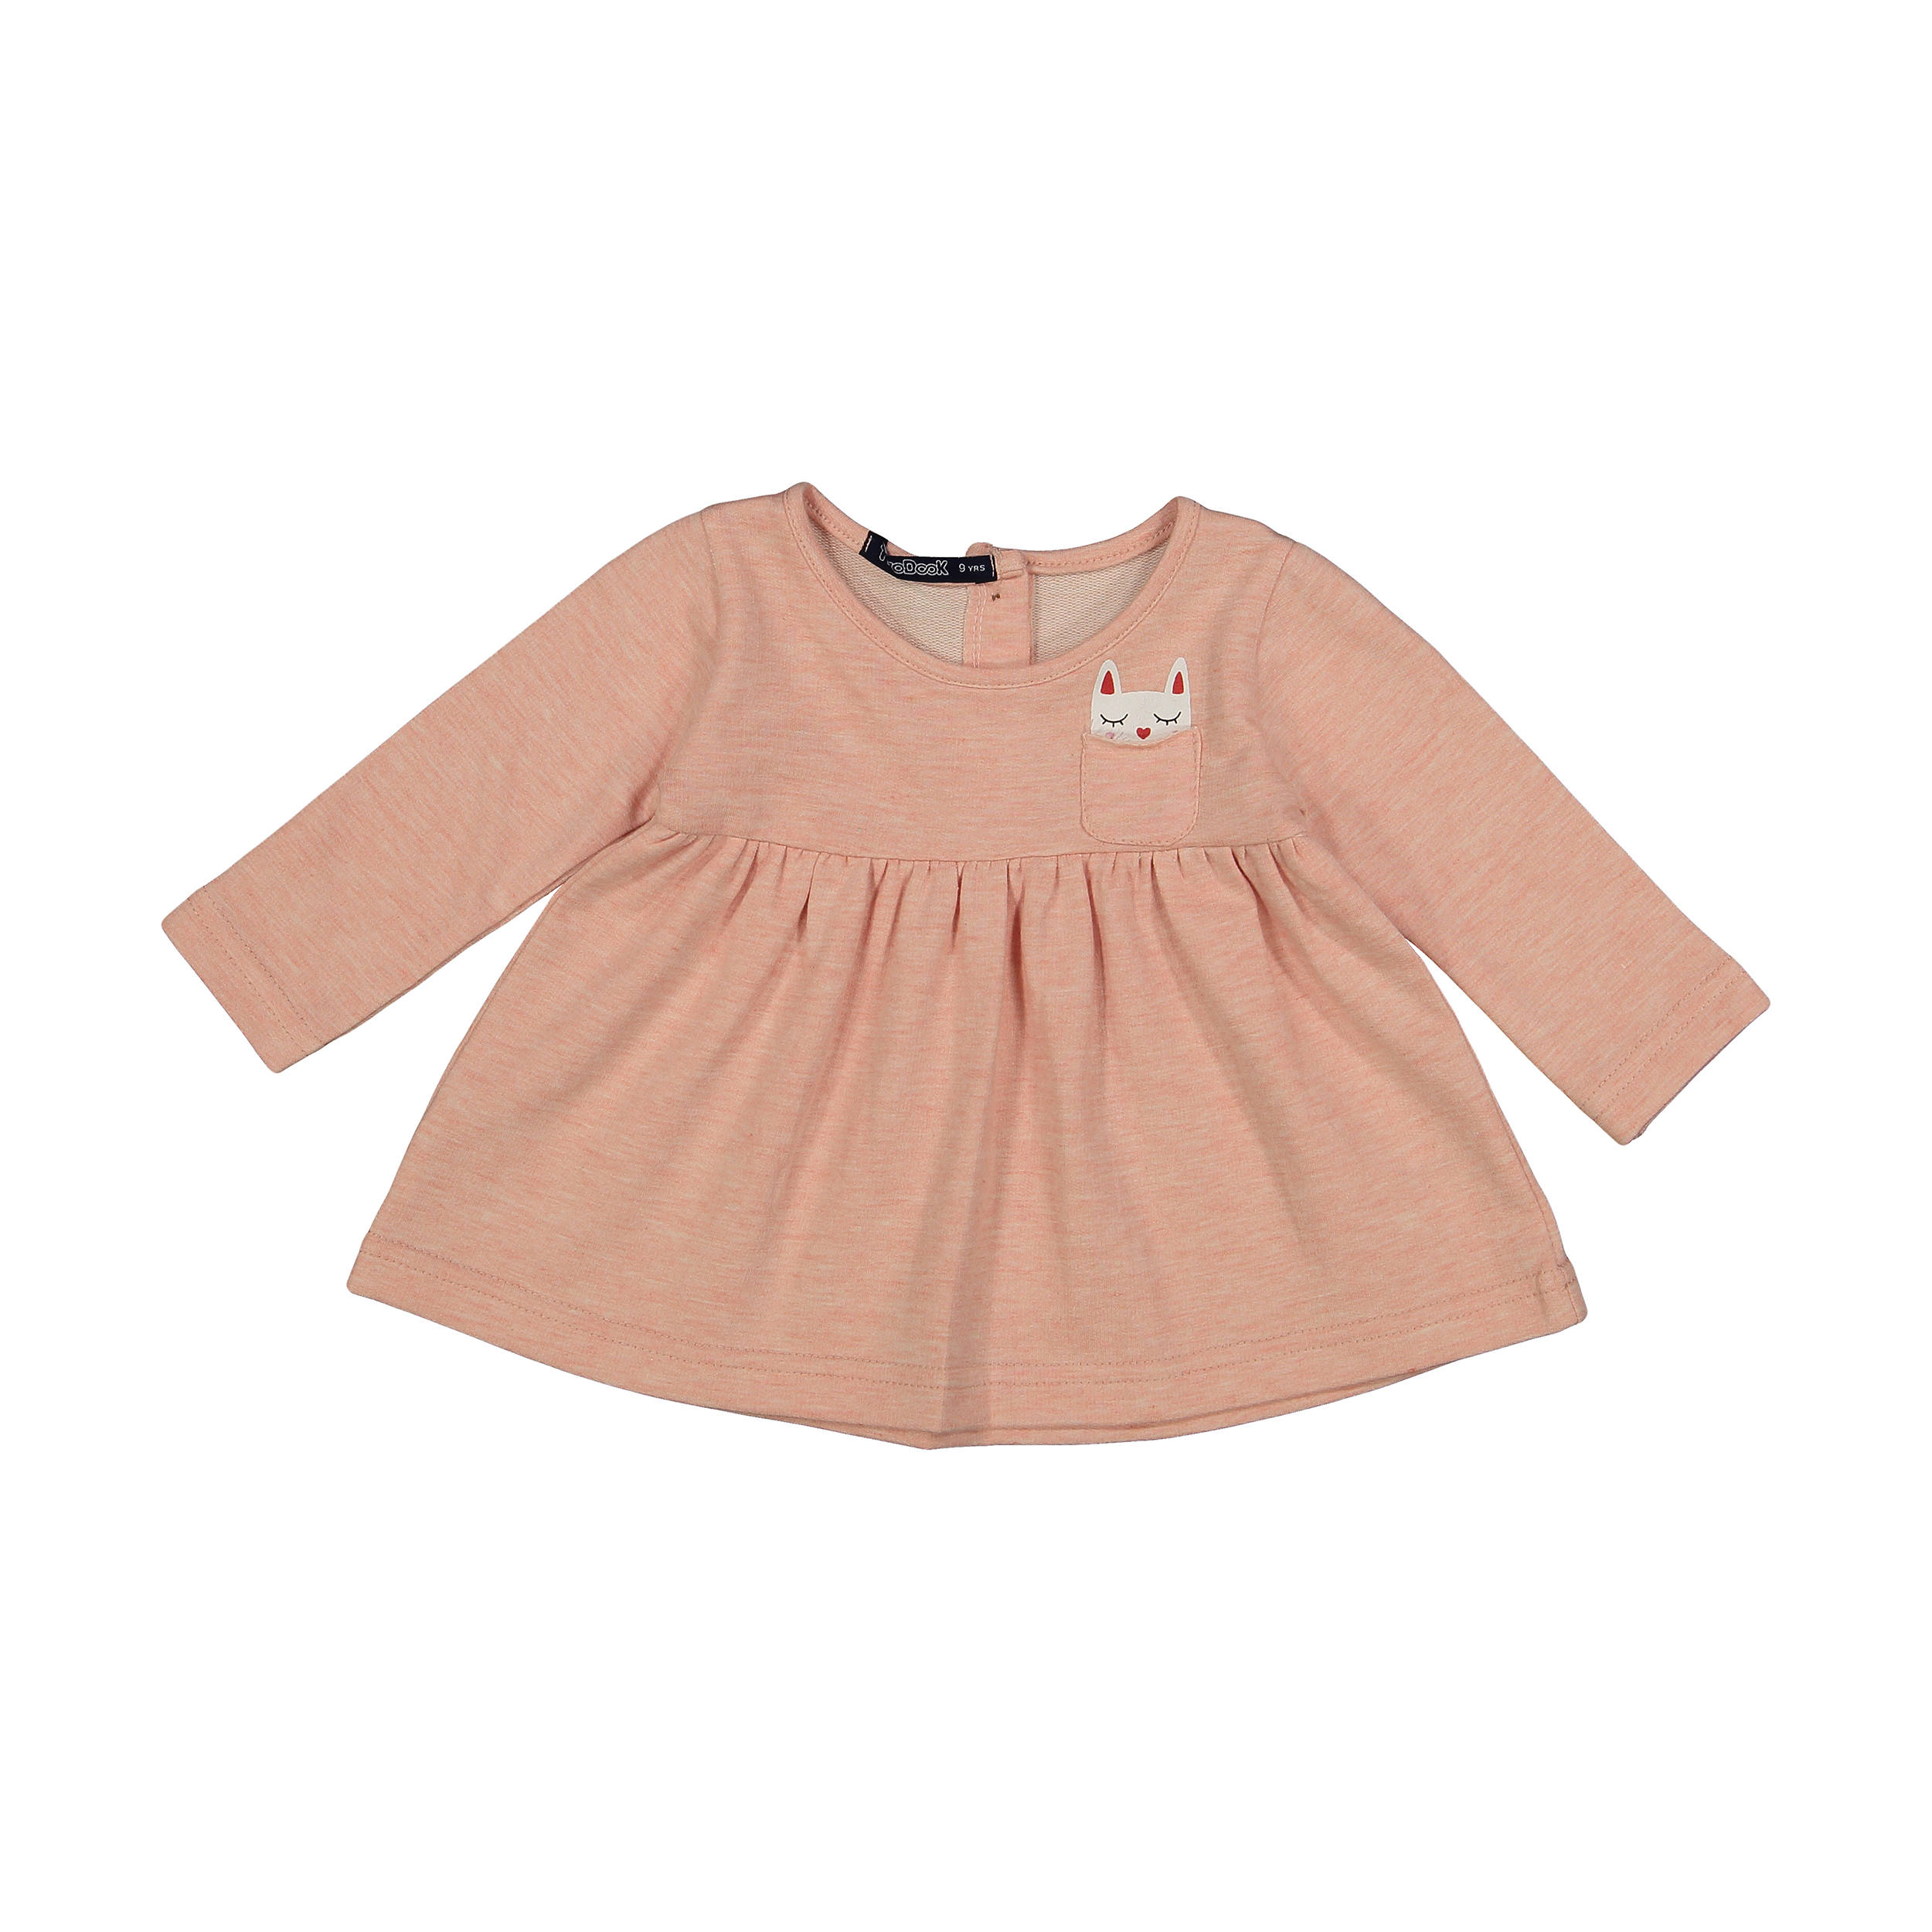 پیراهن نوزادی دخترانه تودوک مدل 2151189-20